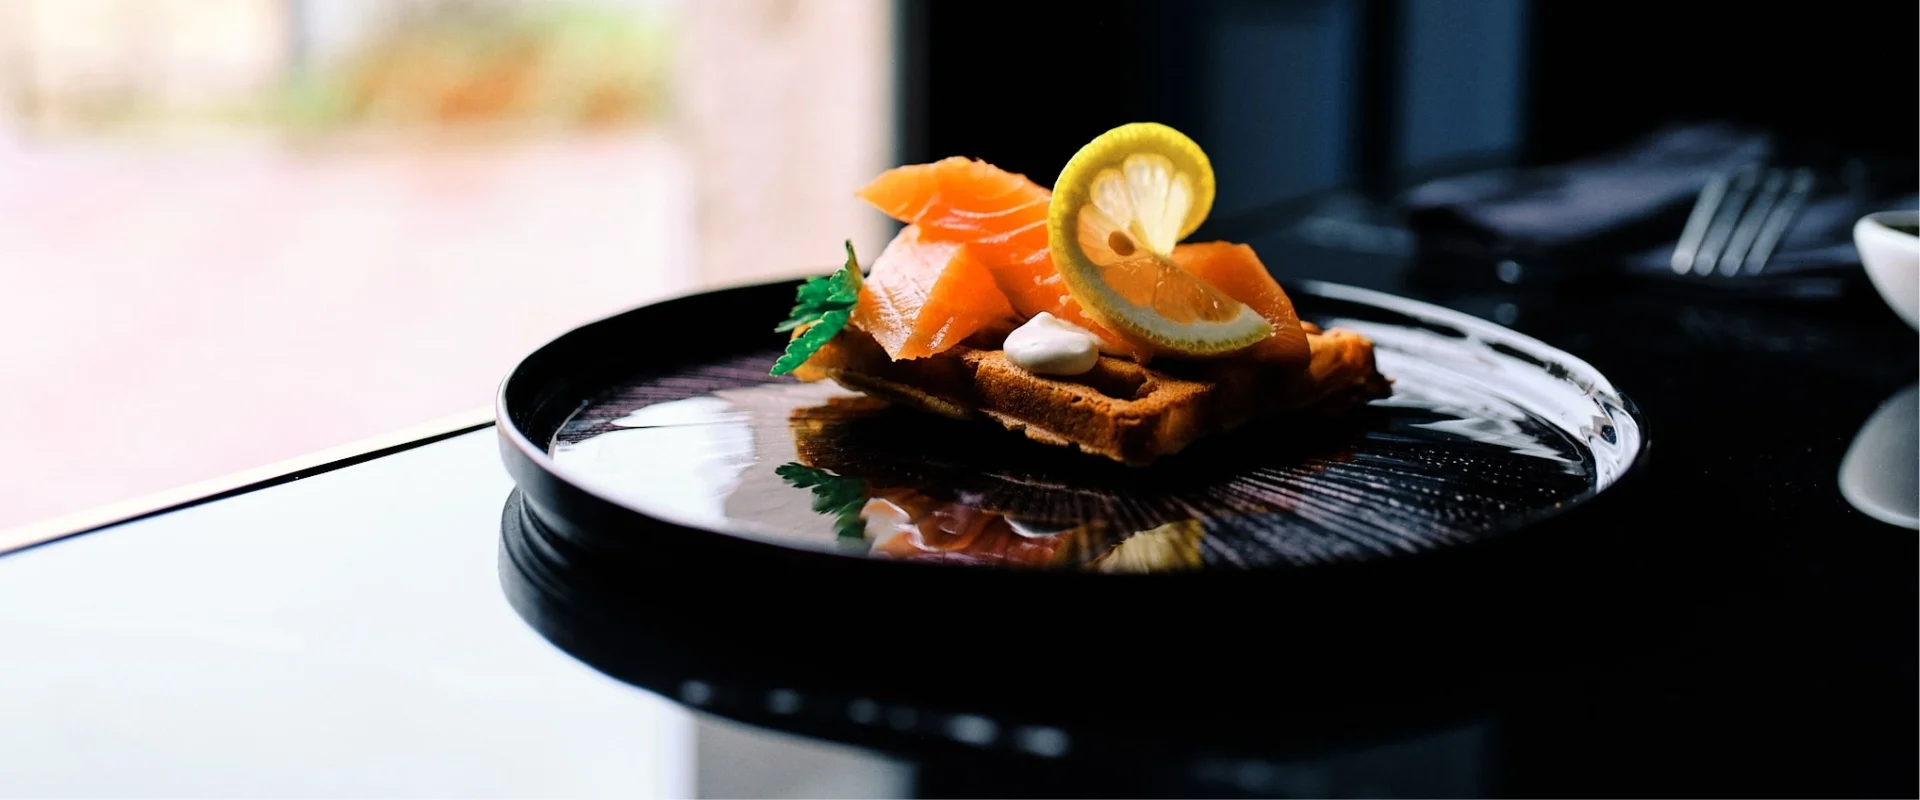 le-bam-restaurant-a-tour-en-sologne-gauffre-de-saumon